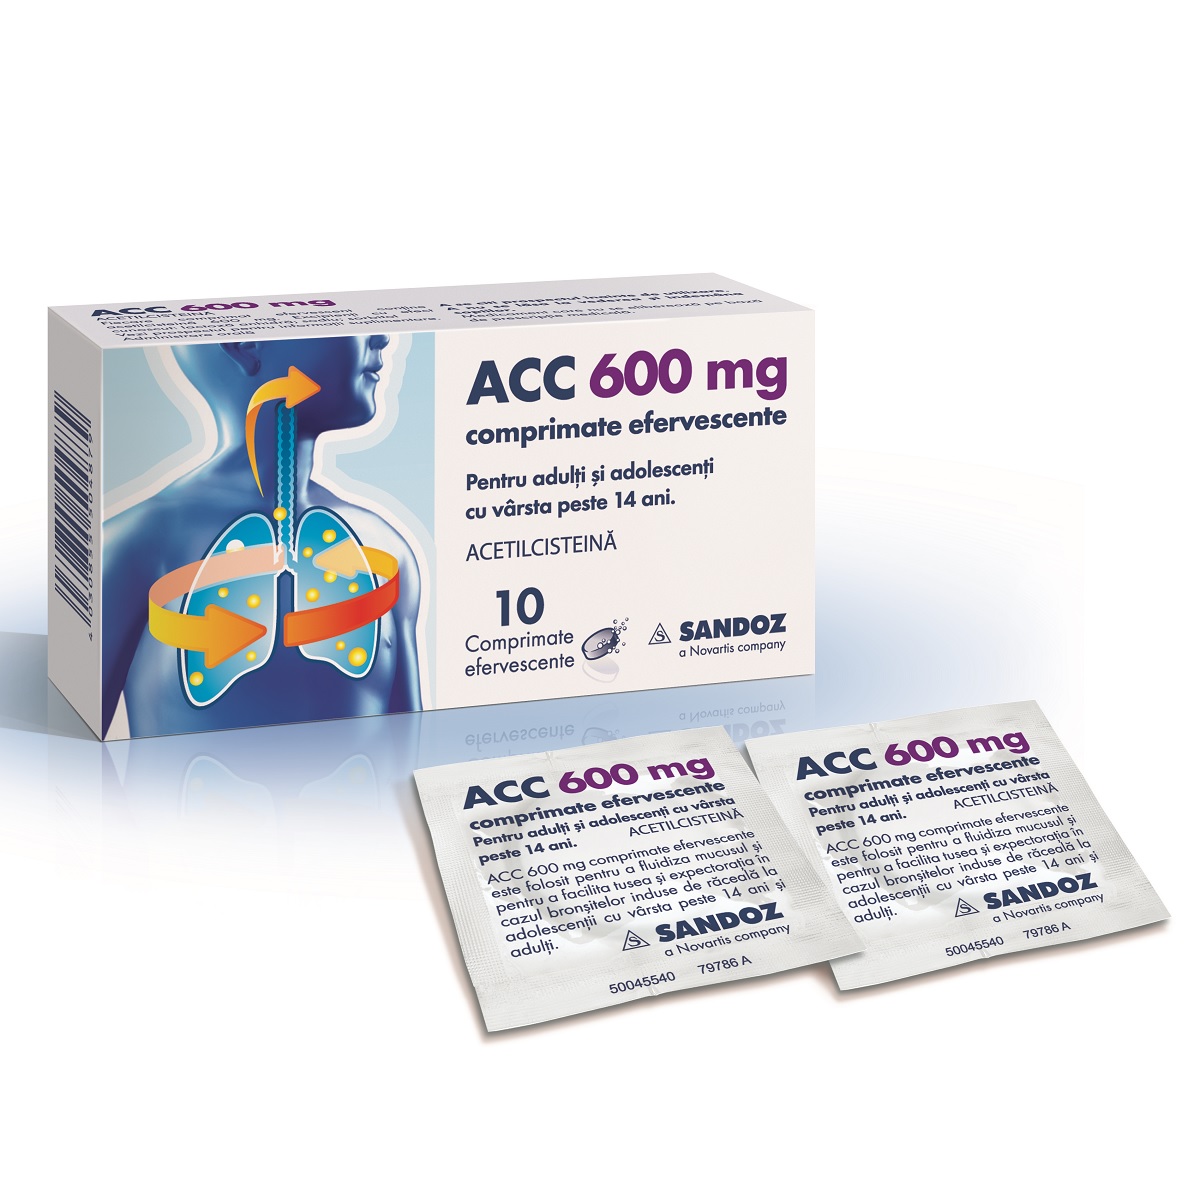 ACC, 600 mg, 10 comprimate efervescente, Sandoz